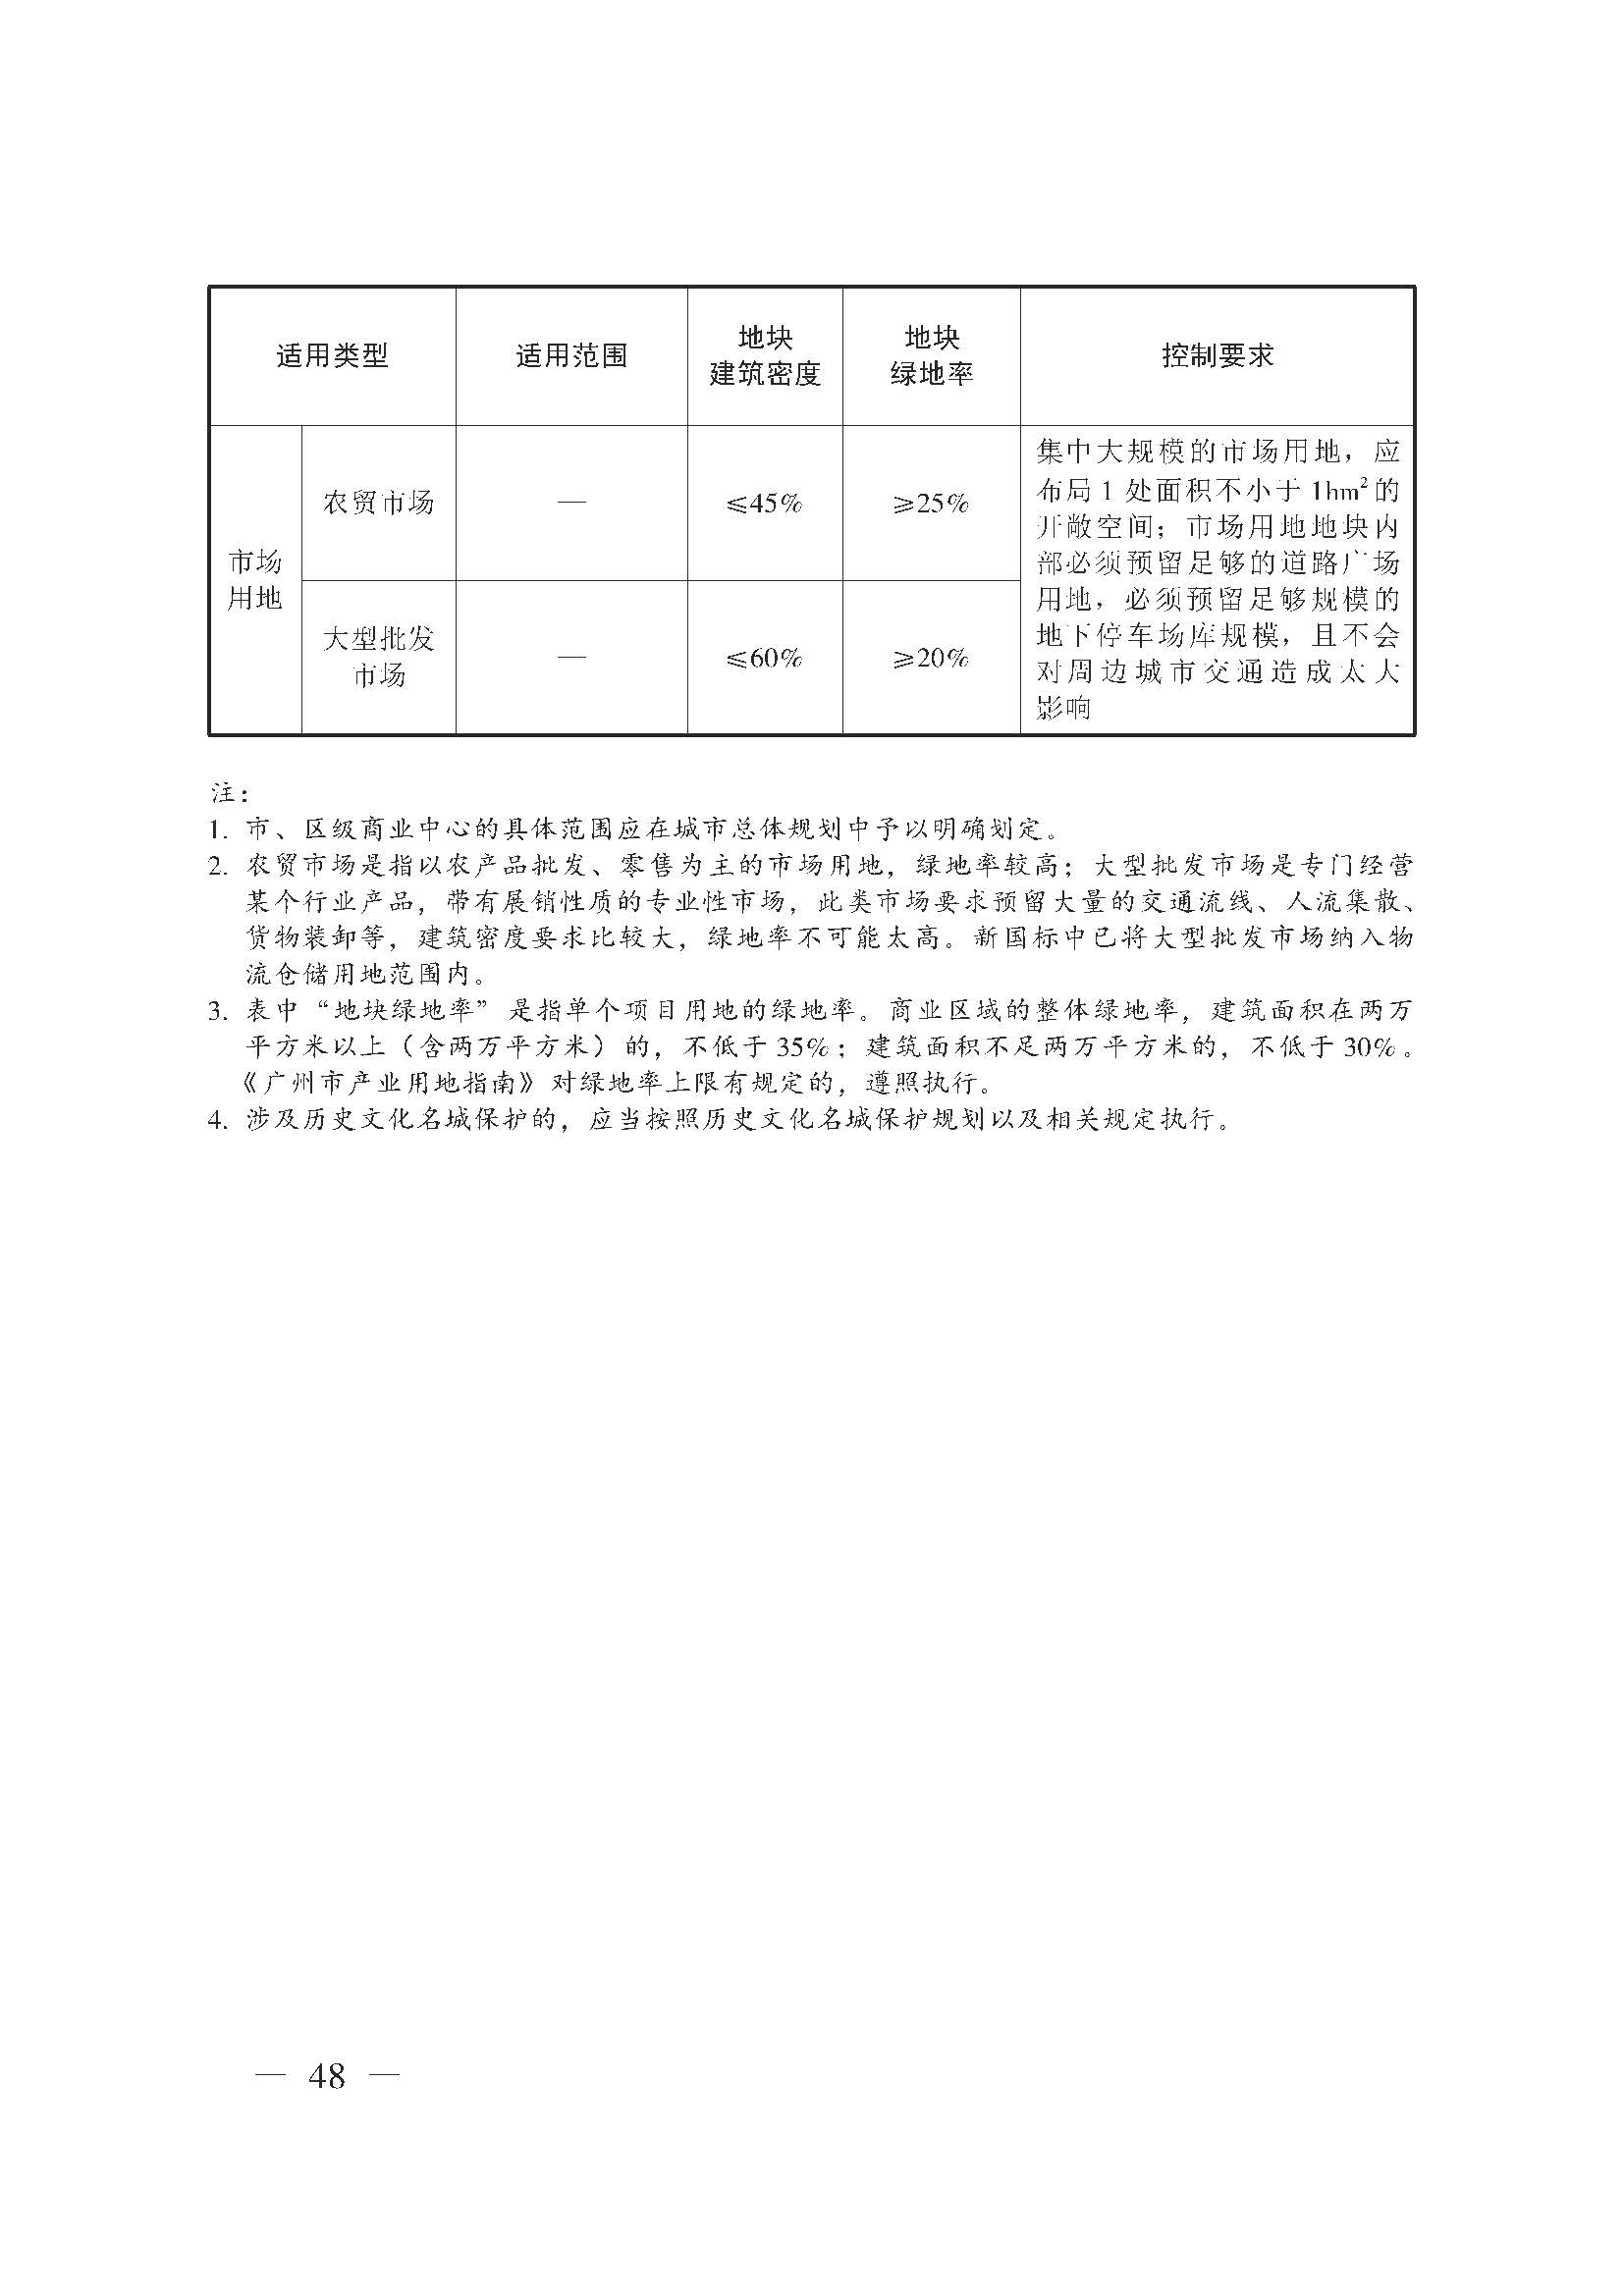 广州市城乡规划技术规定（政府令133号）_页面_48.jpg